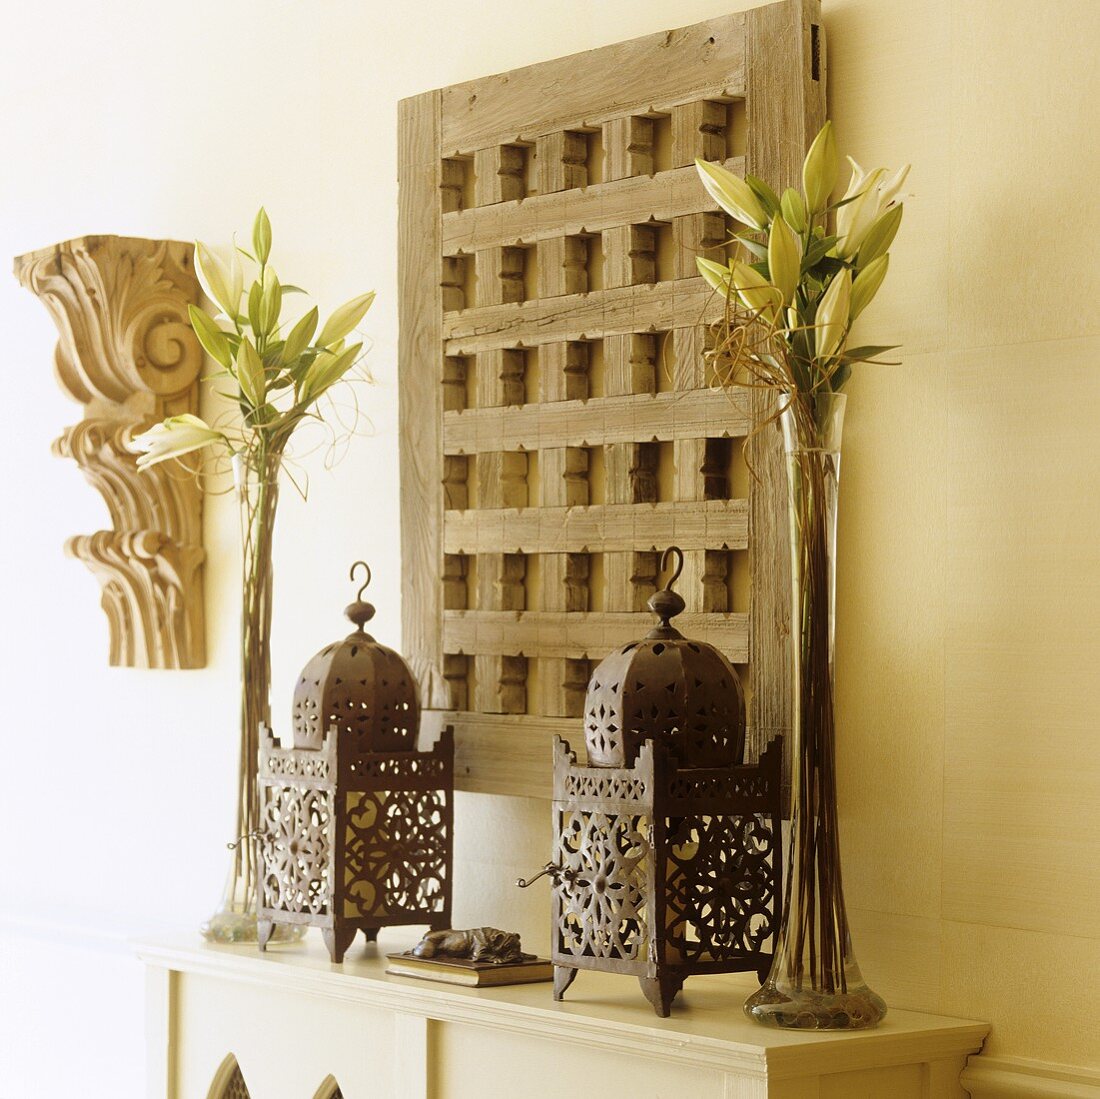 Orientalische Metalllaternen und Lilien in Glasvase vor rustikalem Holzgitter